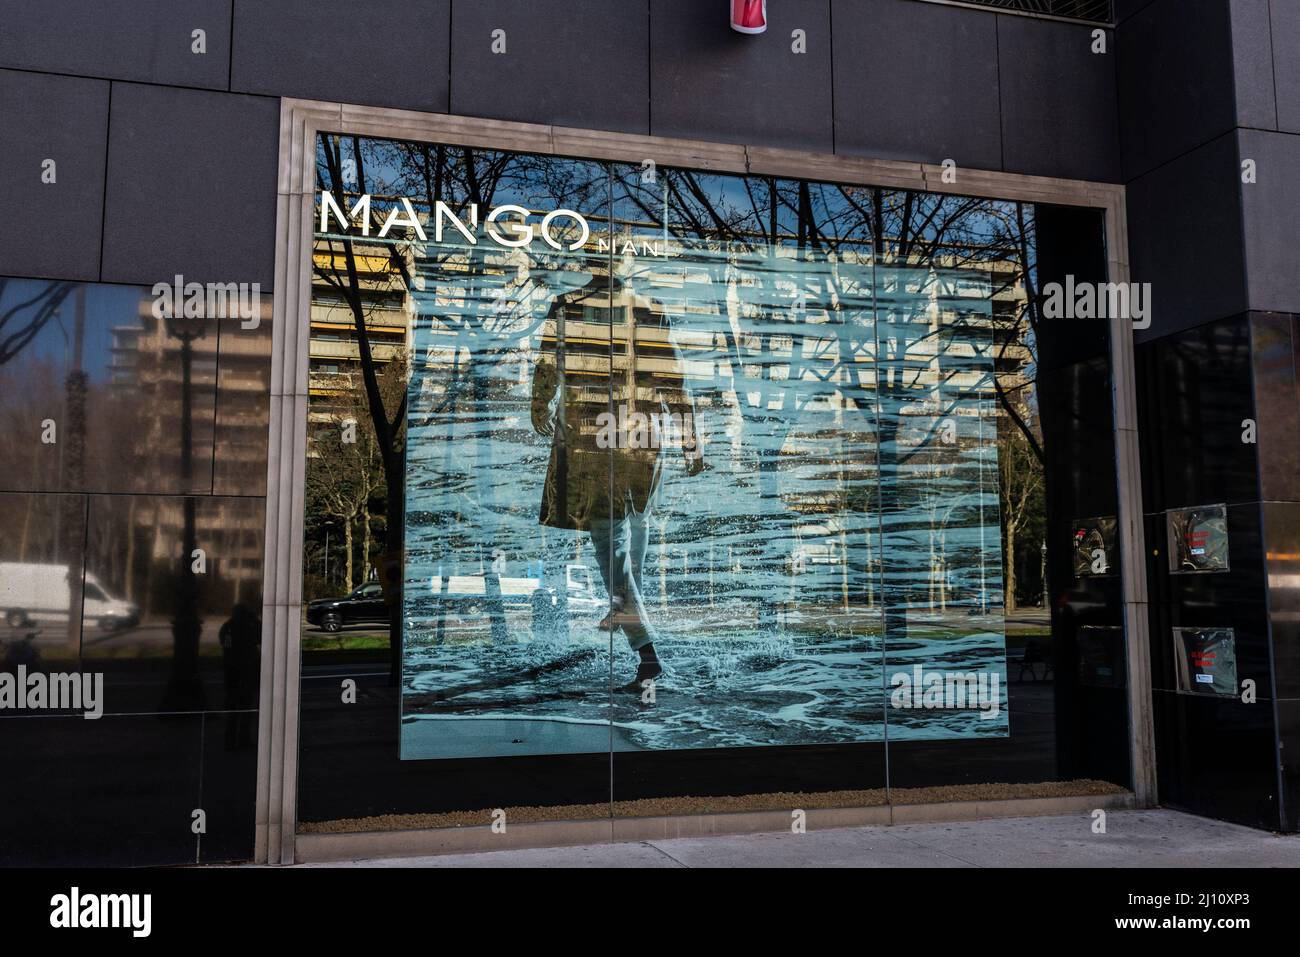 Barcellona, Spagna - 24 febbraio 2022: Mostra di un negozio di abbigliamento Mango in viale Diagonal, via dello shopping di Barcellona, Catalogna, Spagna Foto Stock